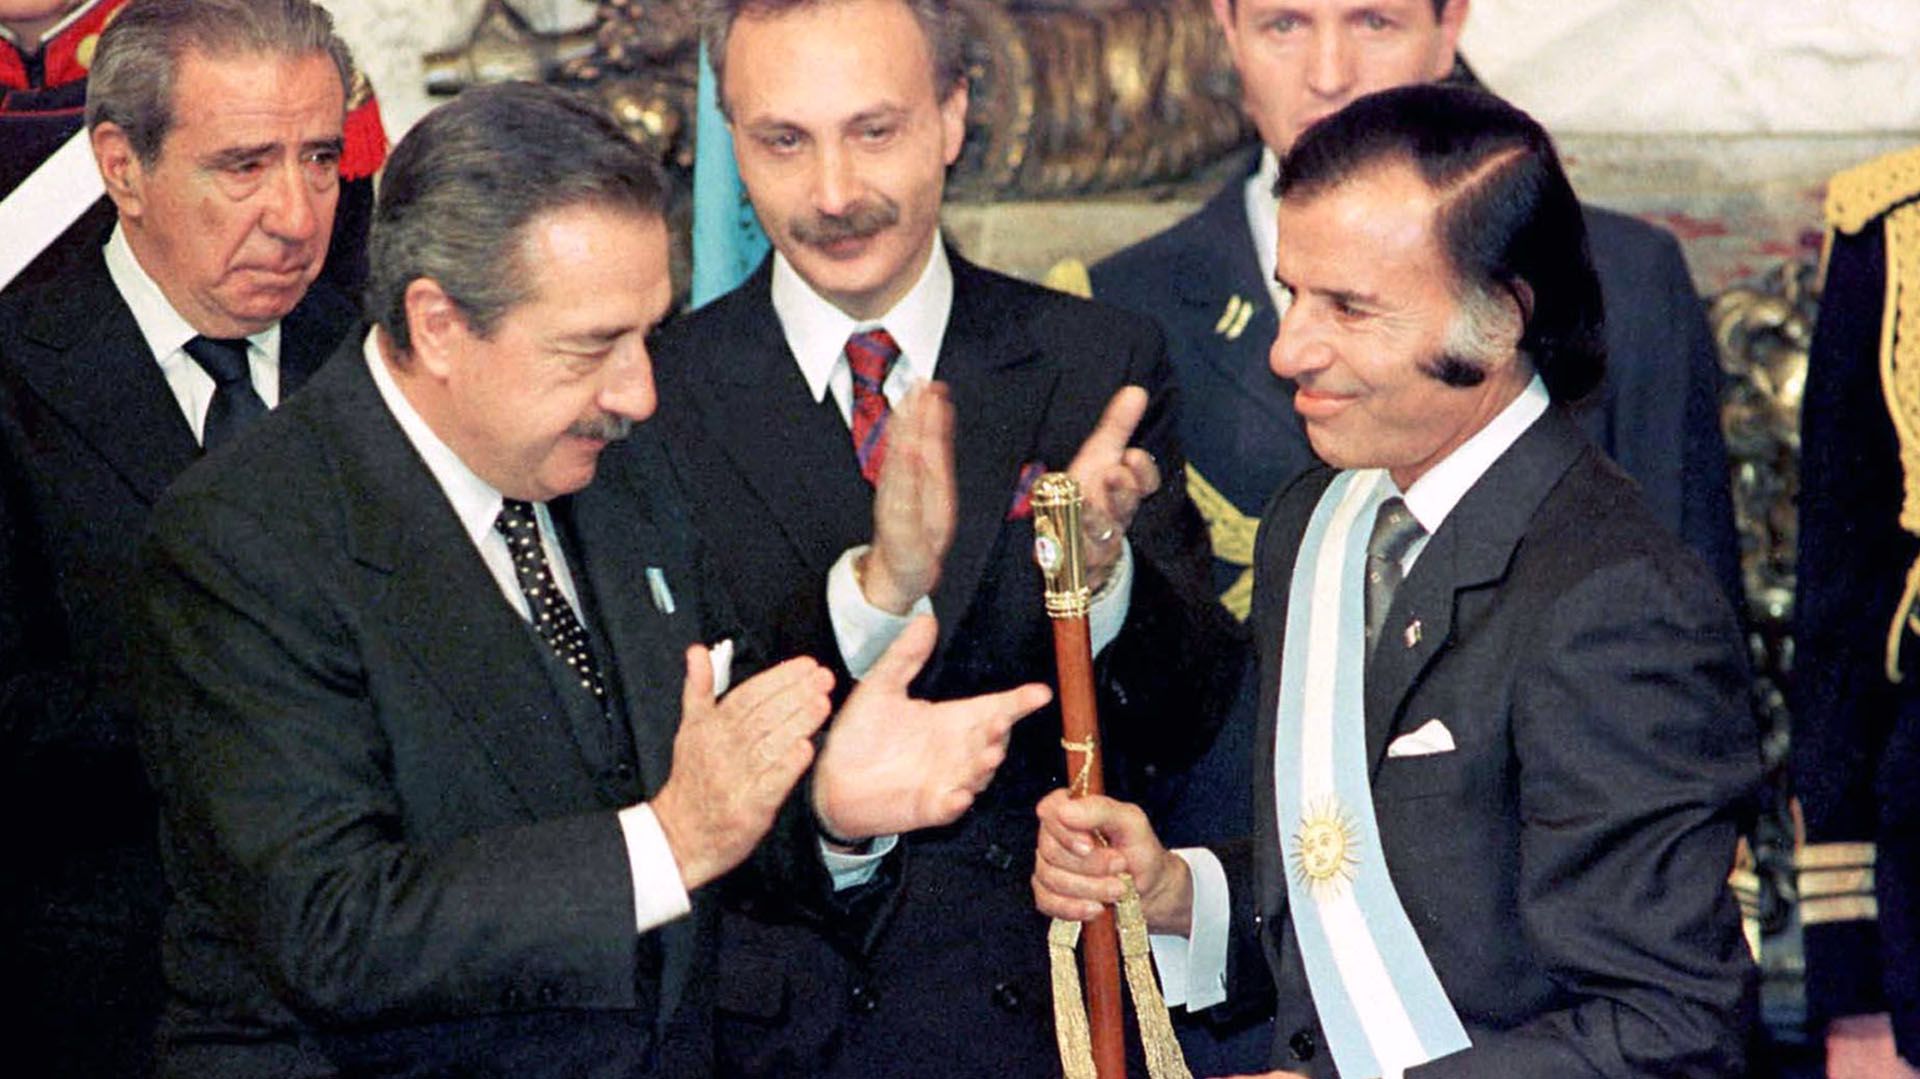 Raúl Alfonsín entrega la banda y el bastón presidencial a Carlos Menem, que llegó antes al gobierno por la crisis institucional que demolió a la administración radical